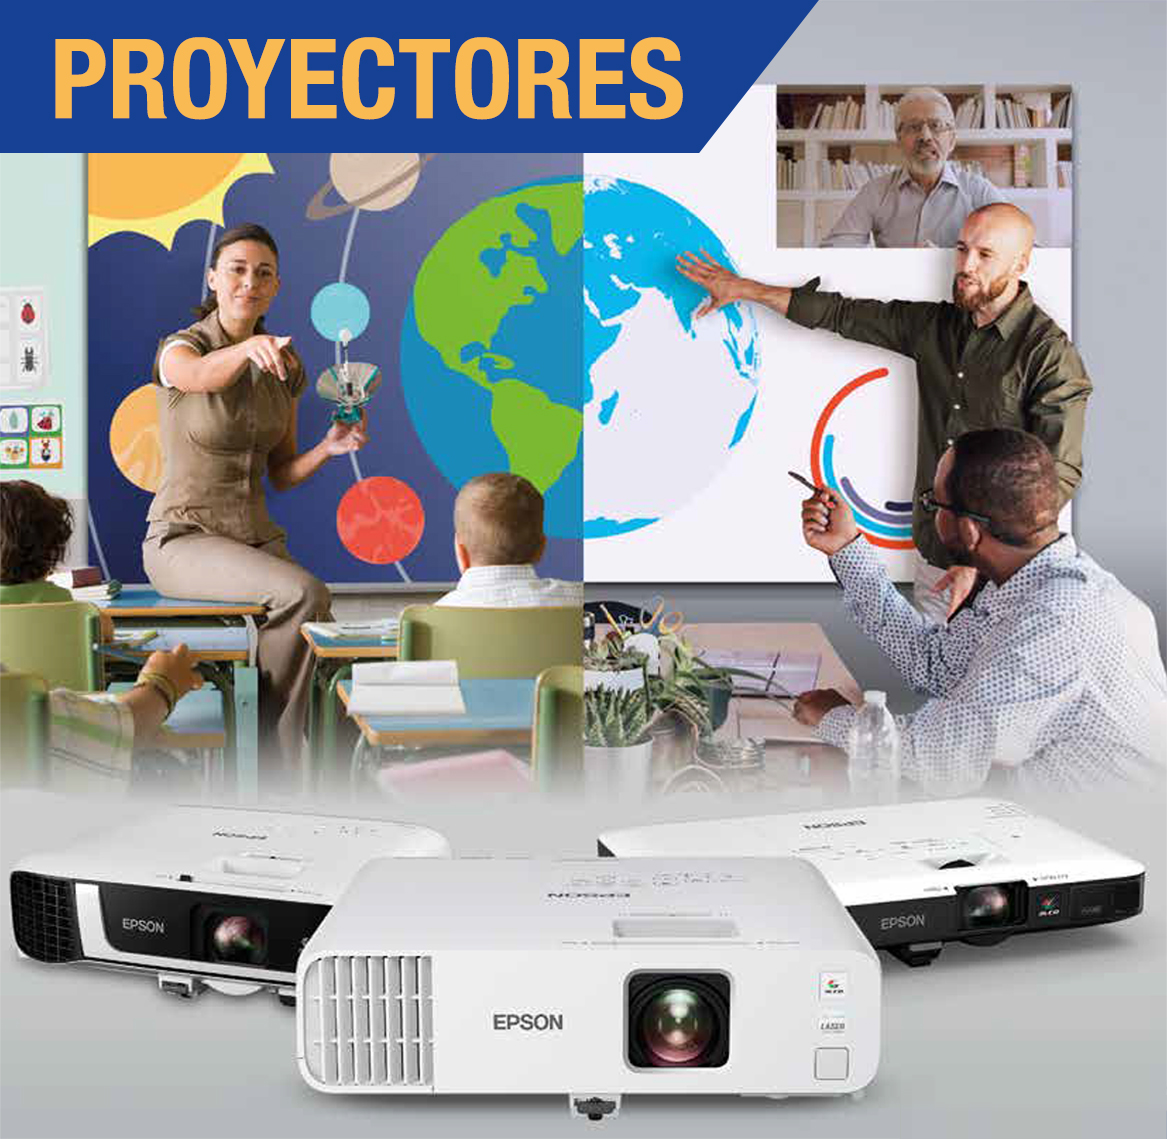 Proyectores laser, interactivos y corto alcance. Para salas de junta, Universidades, vendedores, hogar.